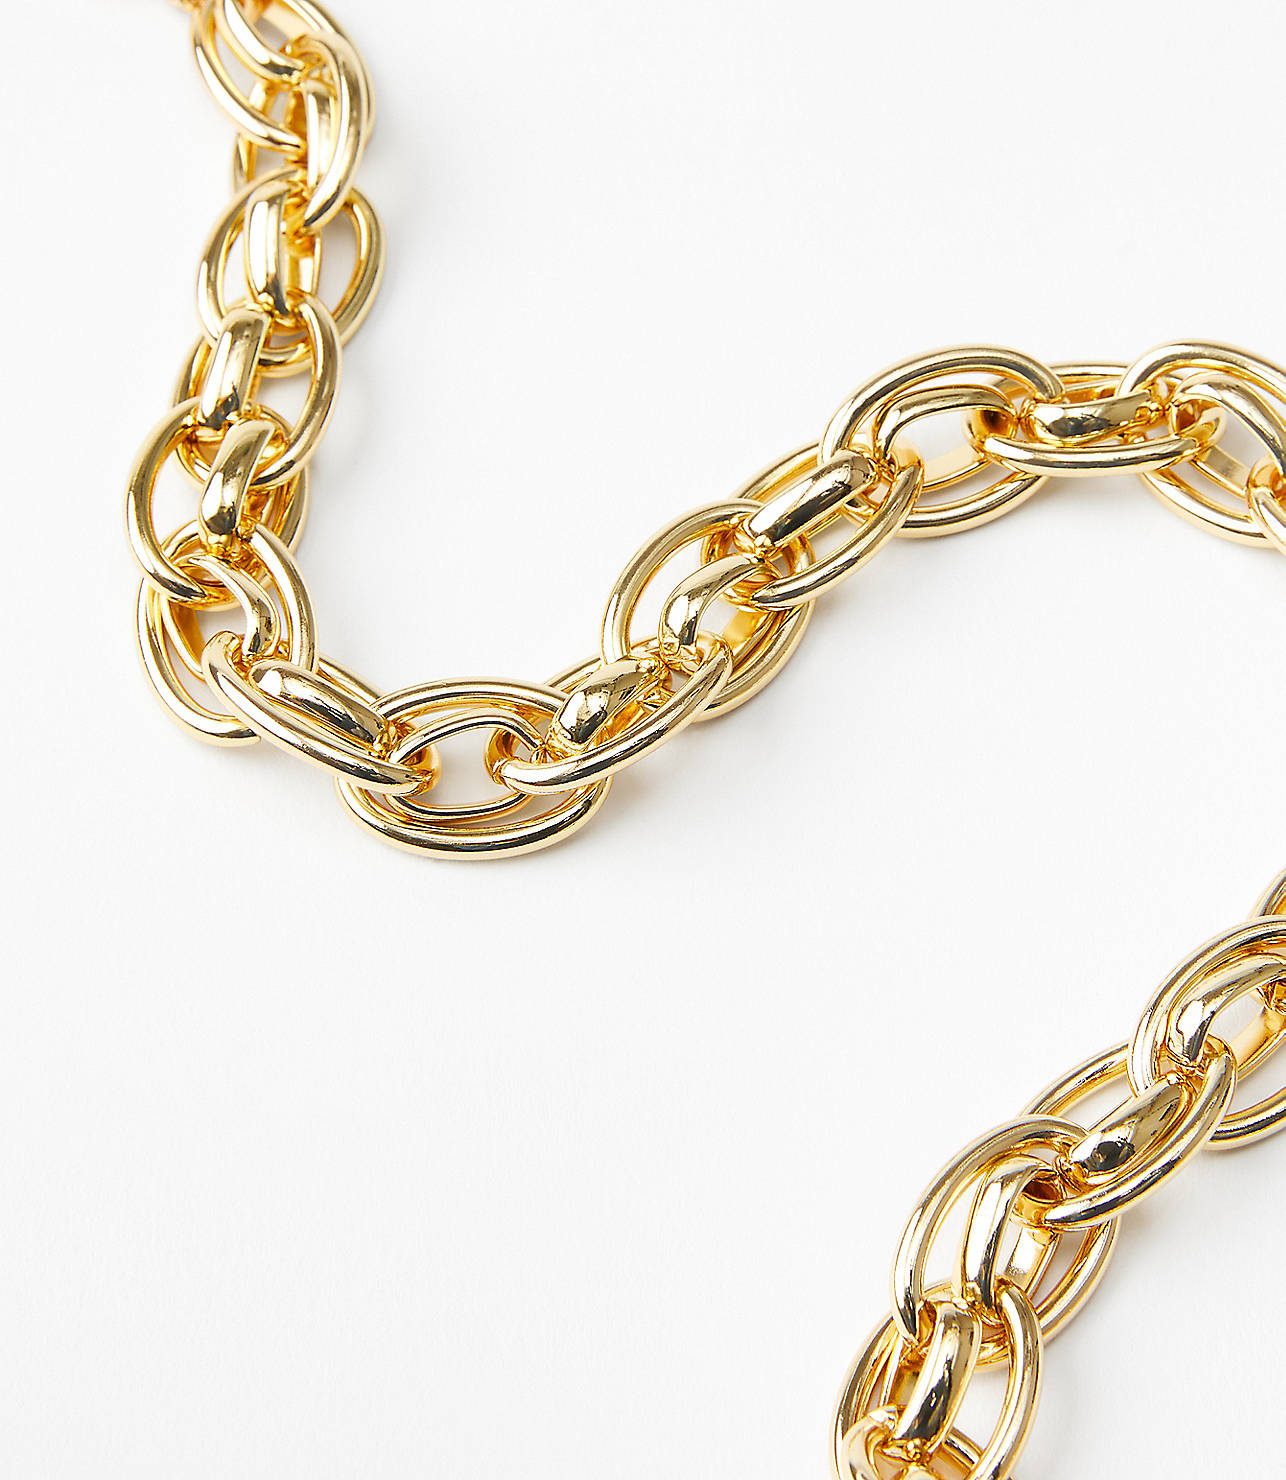 Twist Chain Necklace